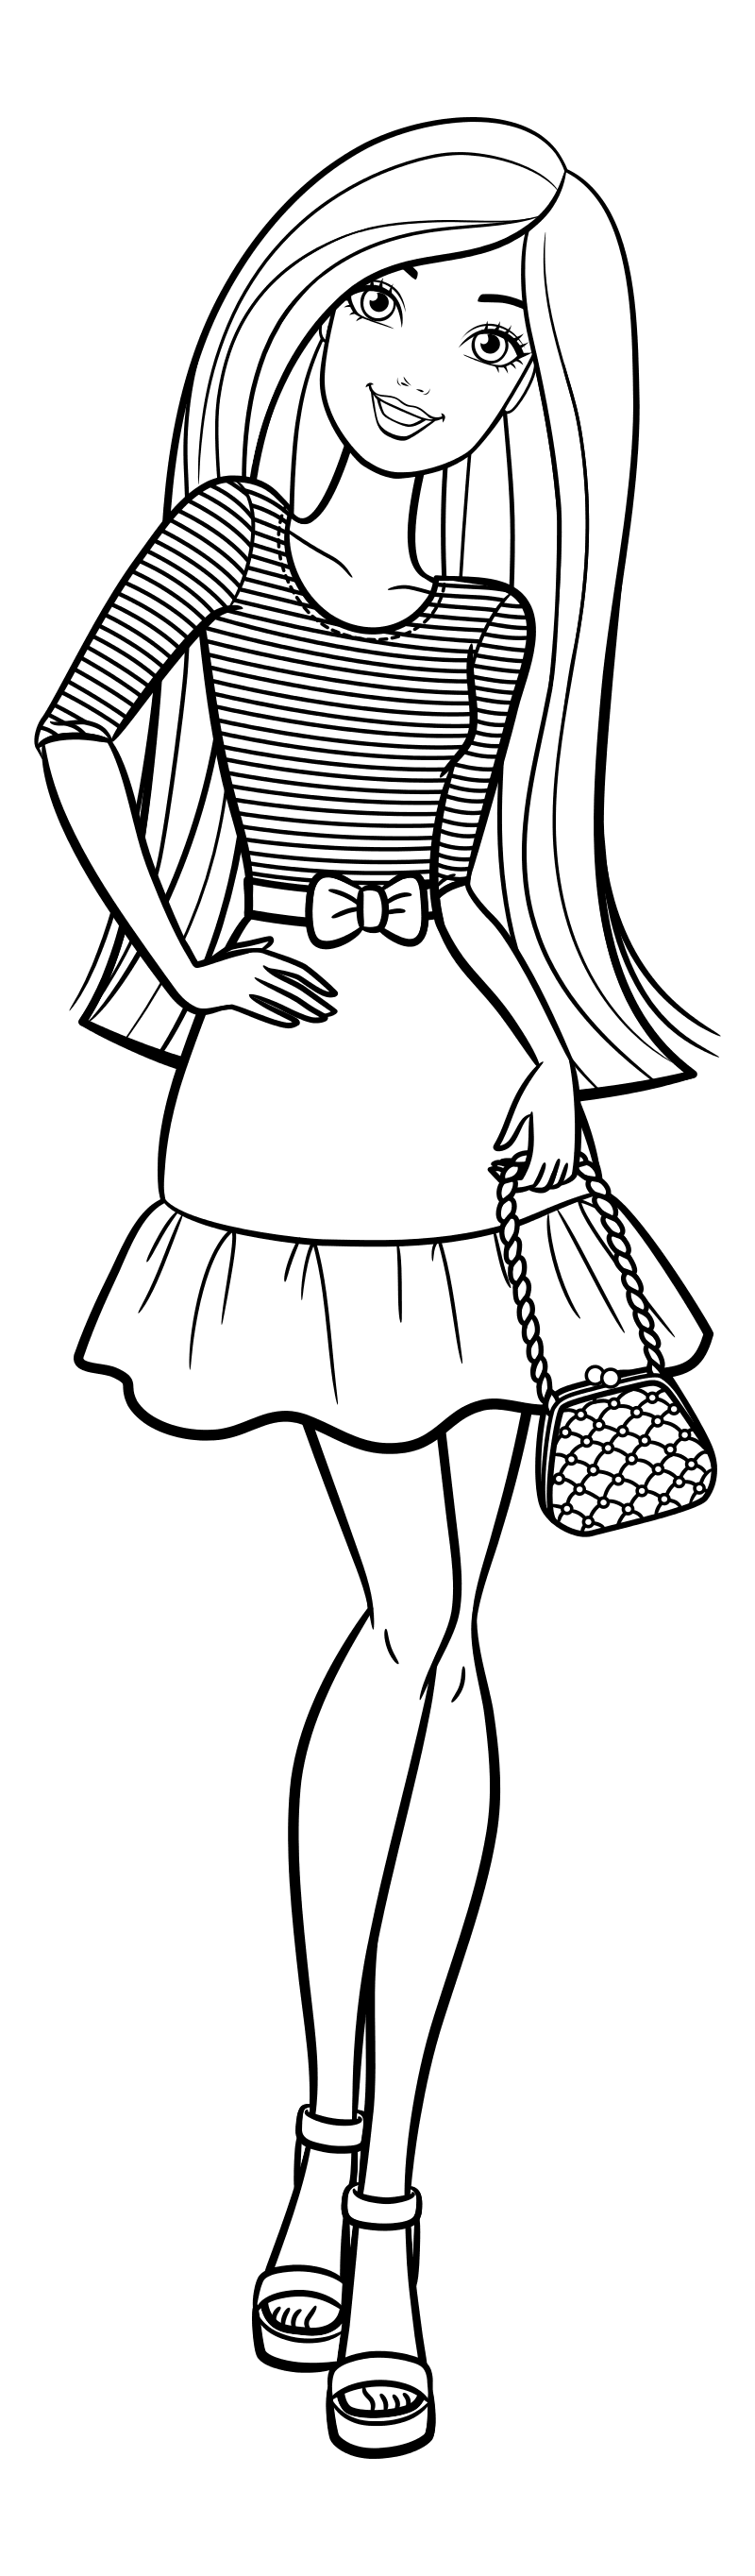 Раскраска - Барби - Барби в стильной полосатой майке